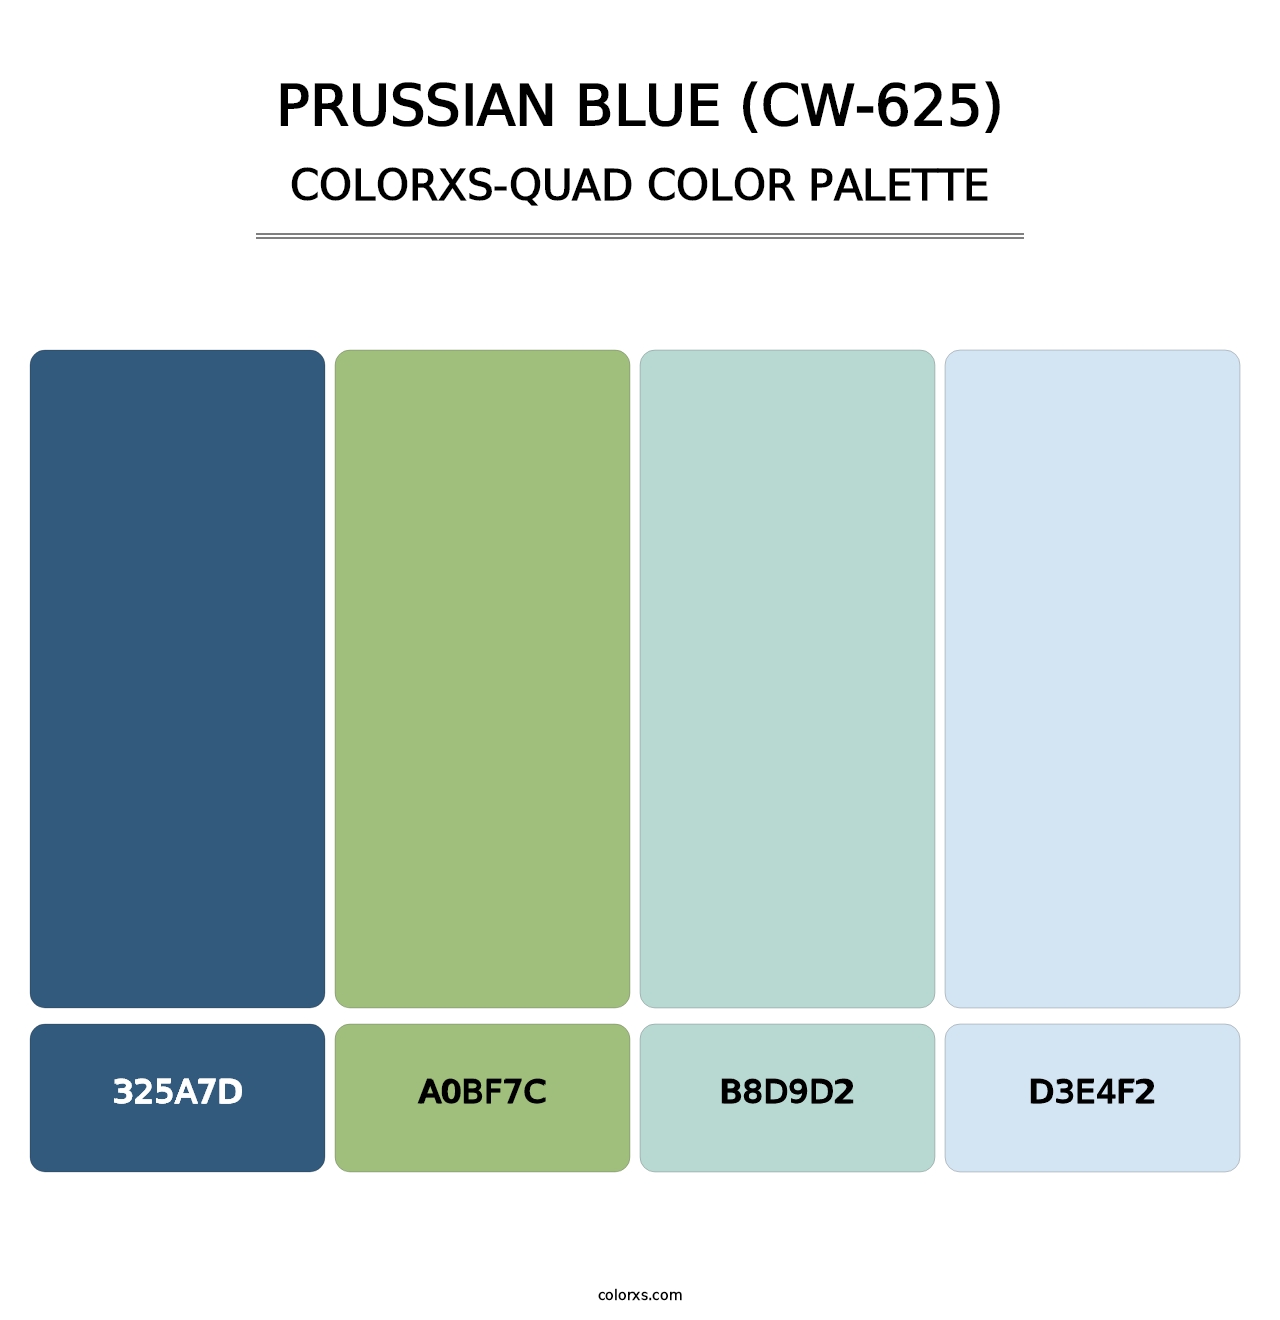 Prussian Blue (CW-625) - Colorxs Quad Palette